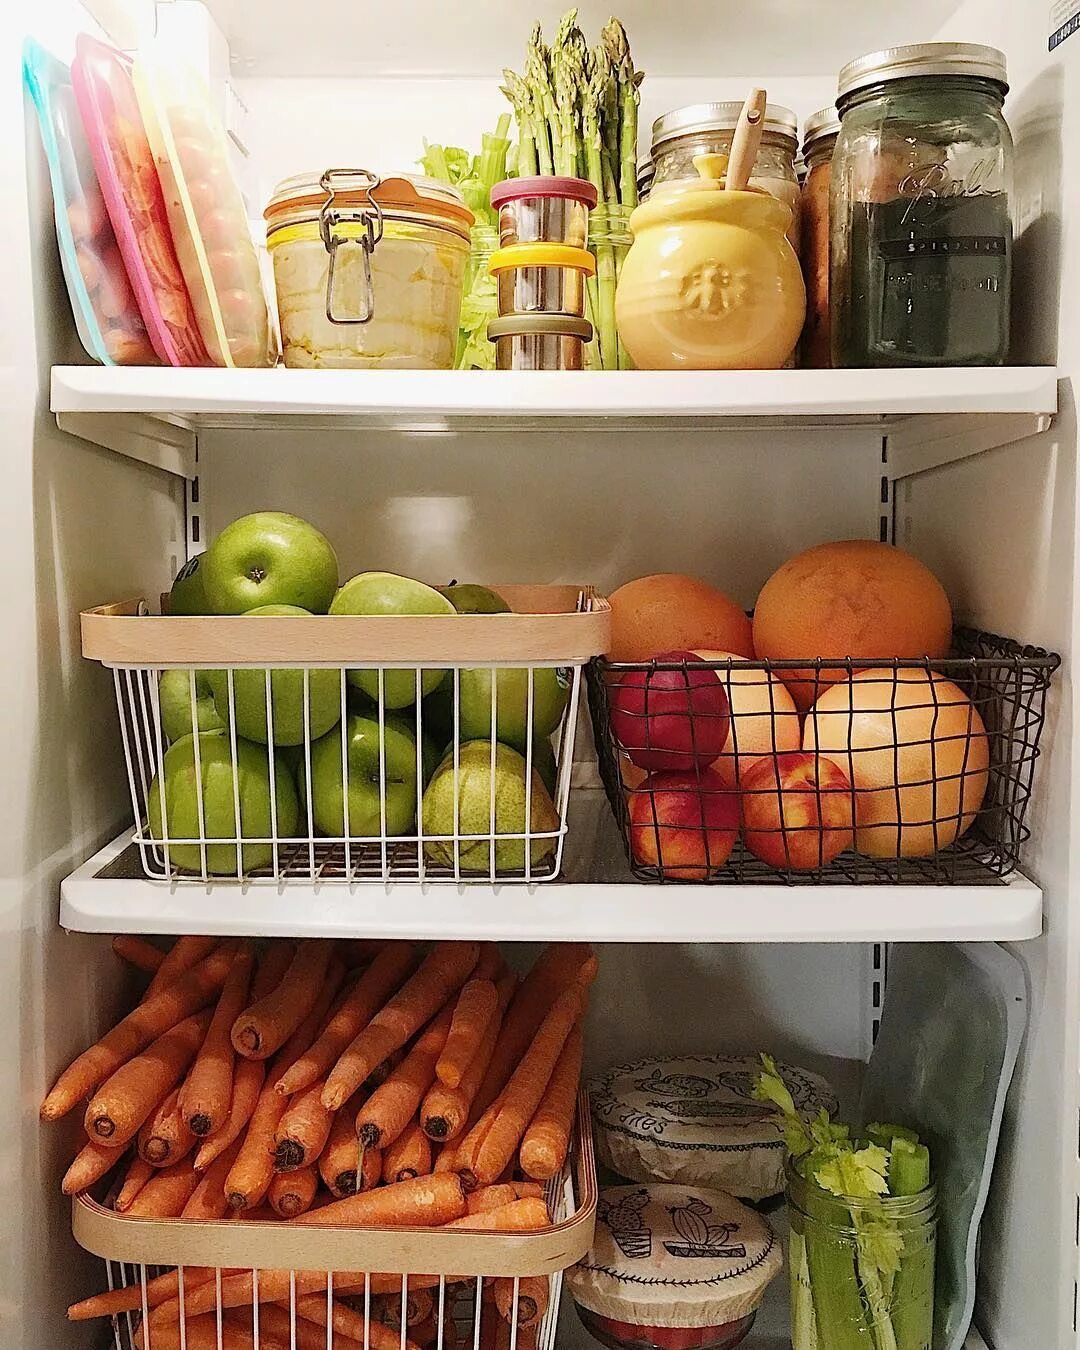 Качество хранения овощей. Хранение в холодильнике. Холодильник для хранения овощей и фруктов. Фрукты в холодильнике. Холодильник с продуктами.